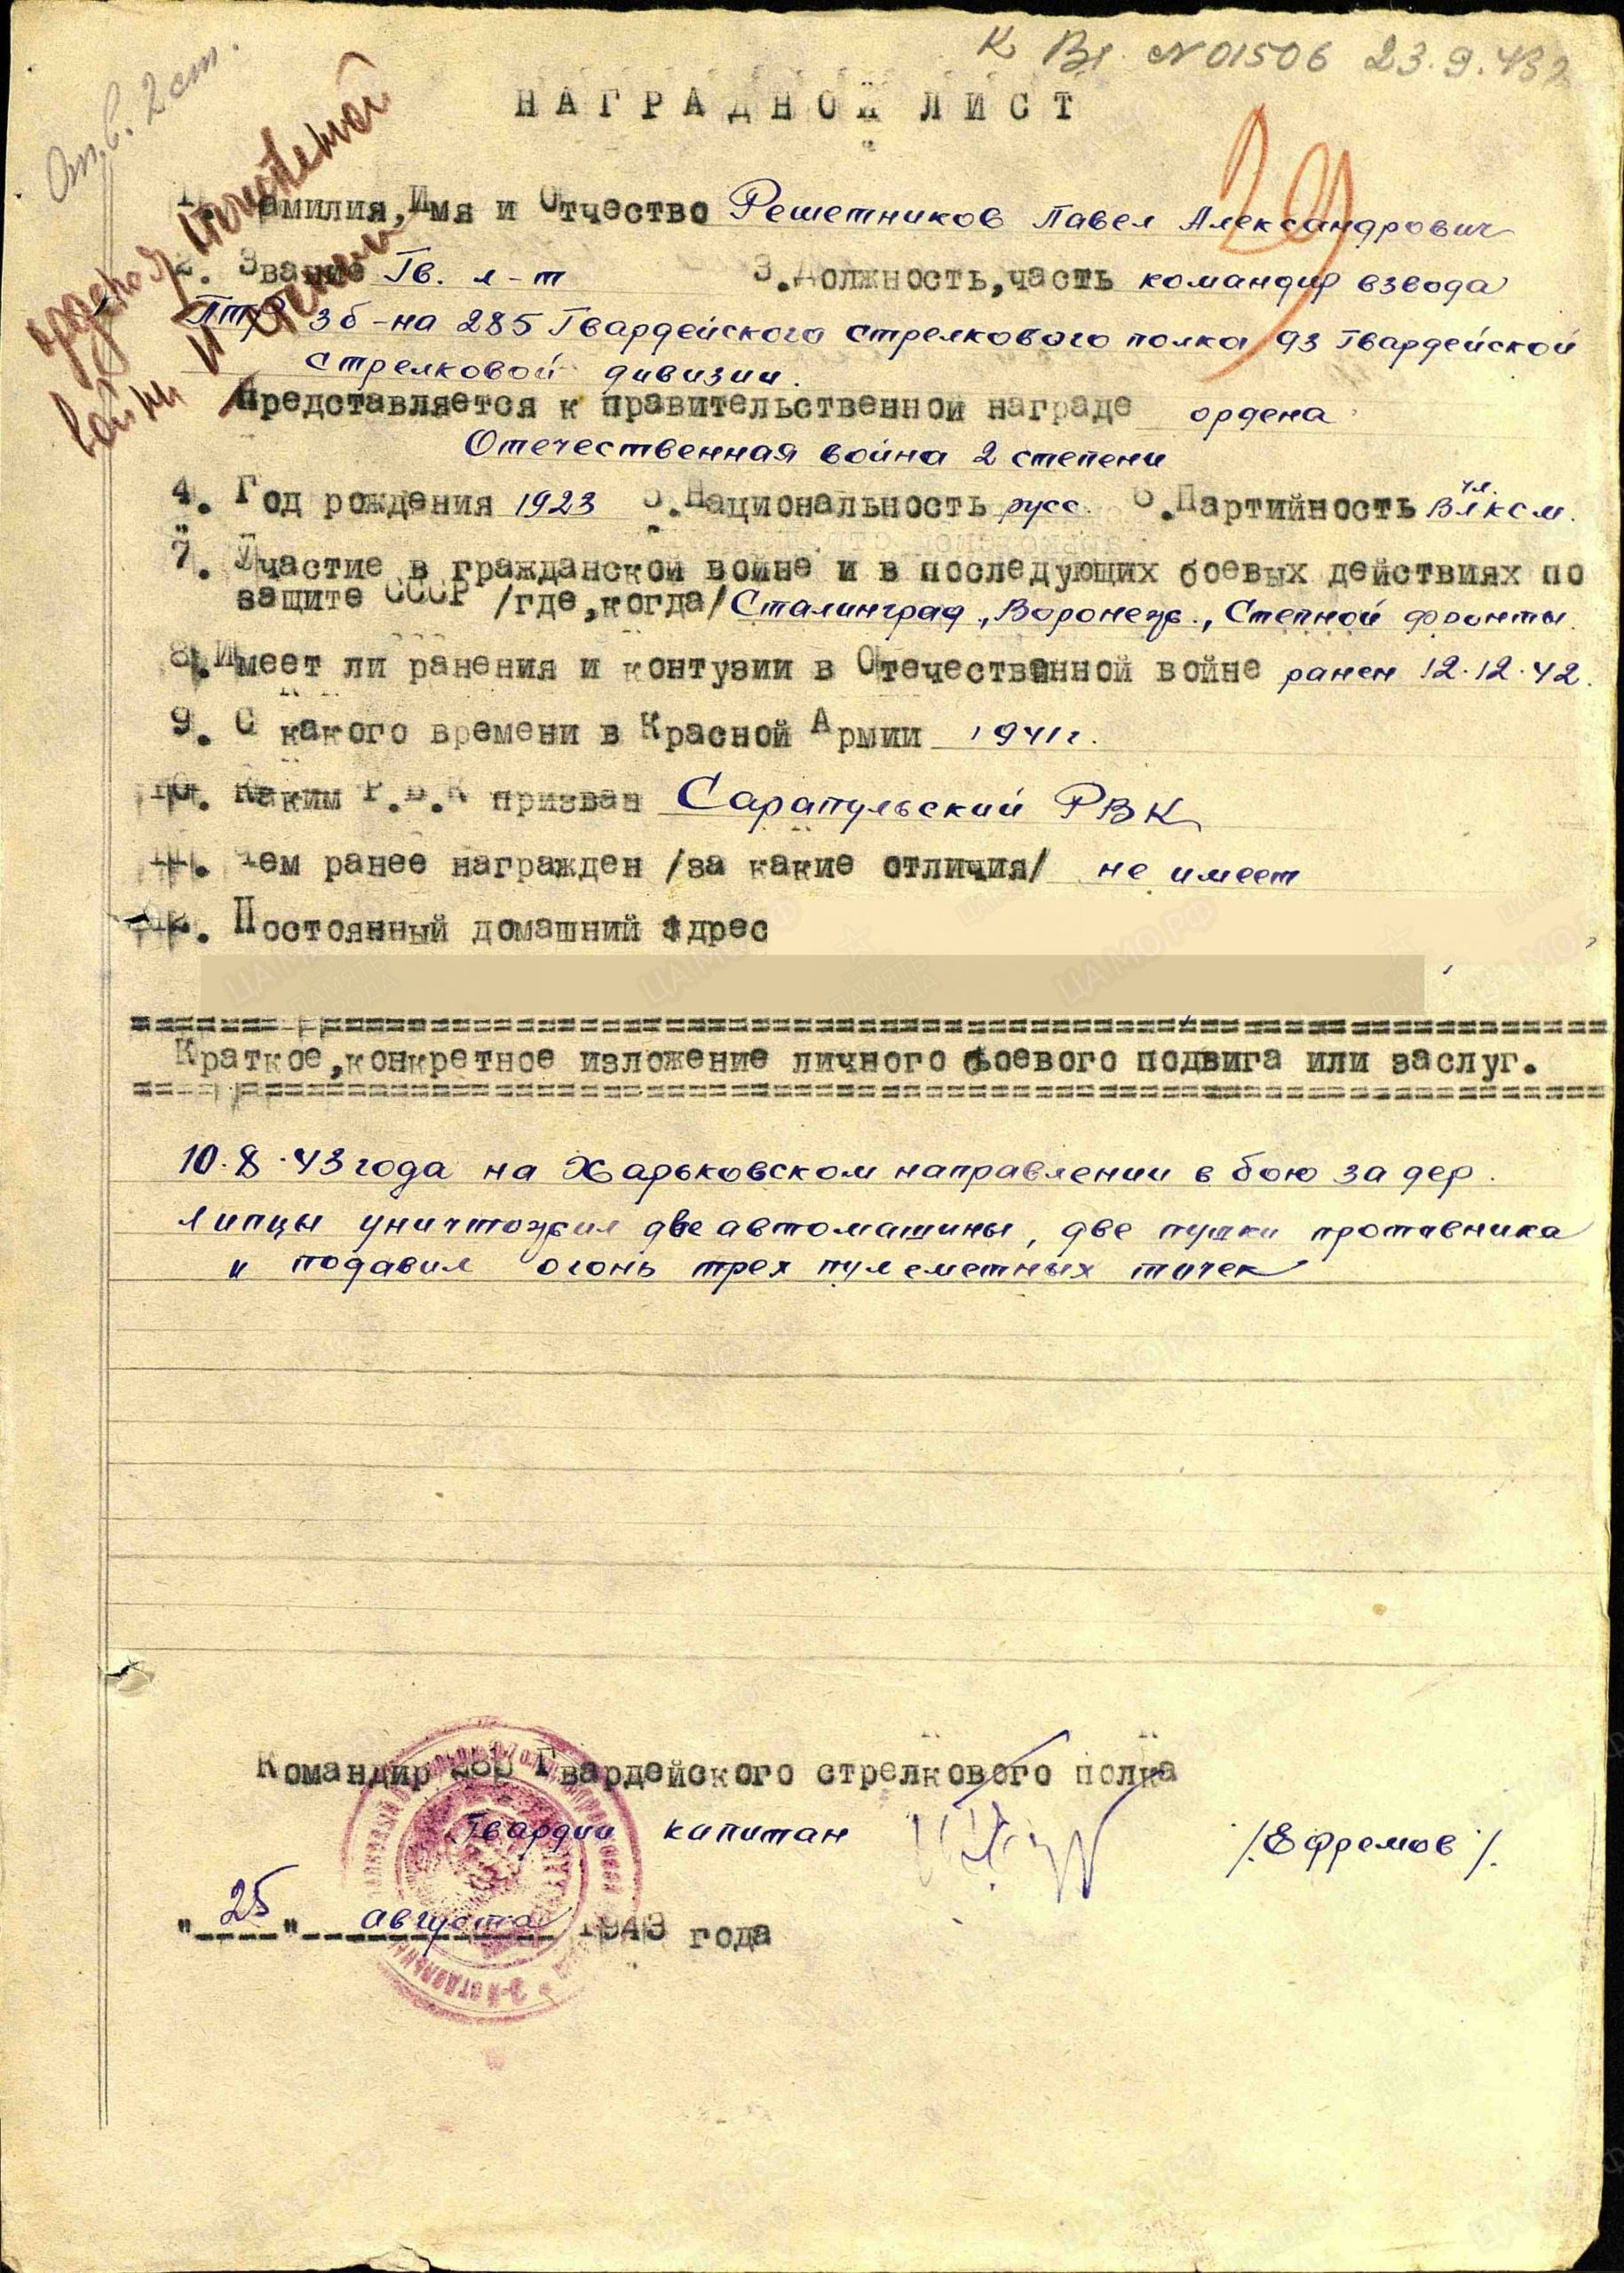 Наградной лист. Орден Отечественной войны II степени